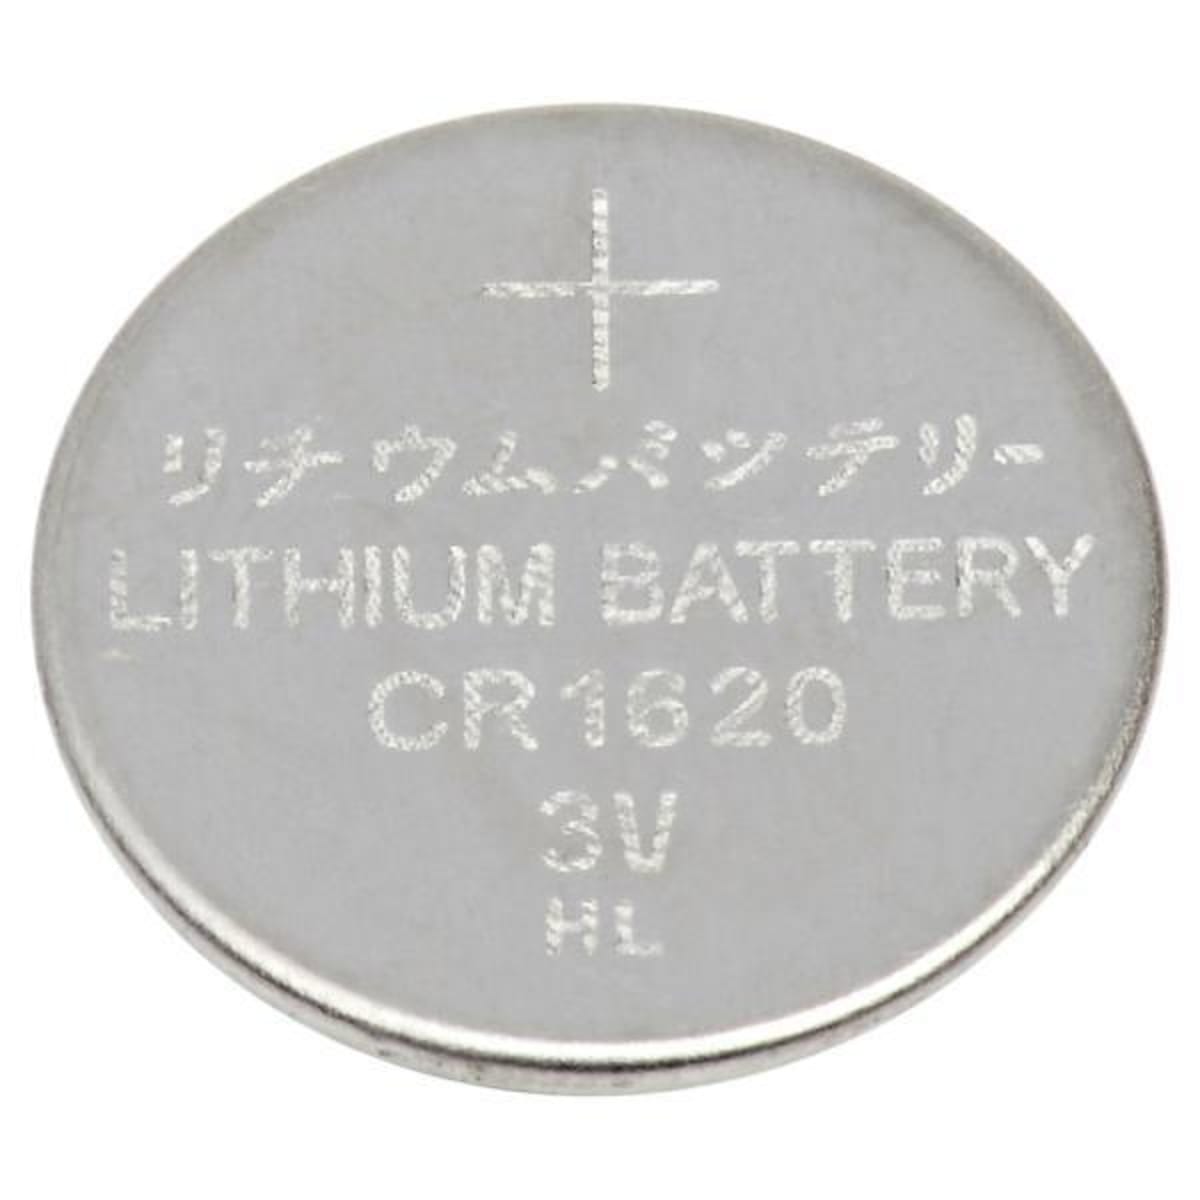 Piles Lithium : CR1620 DL1620 3V 3 volt